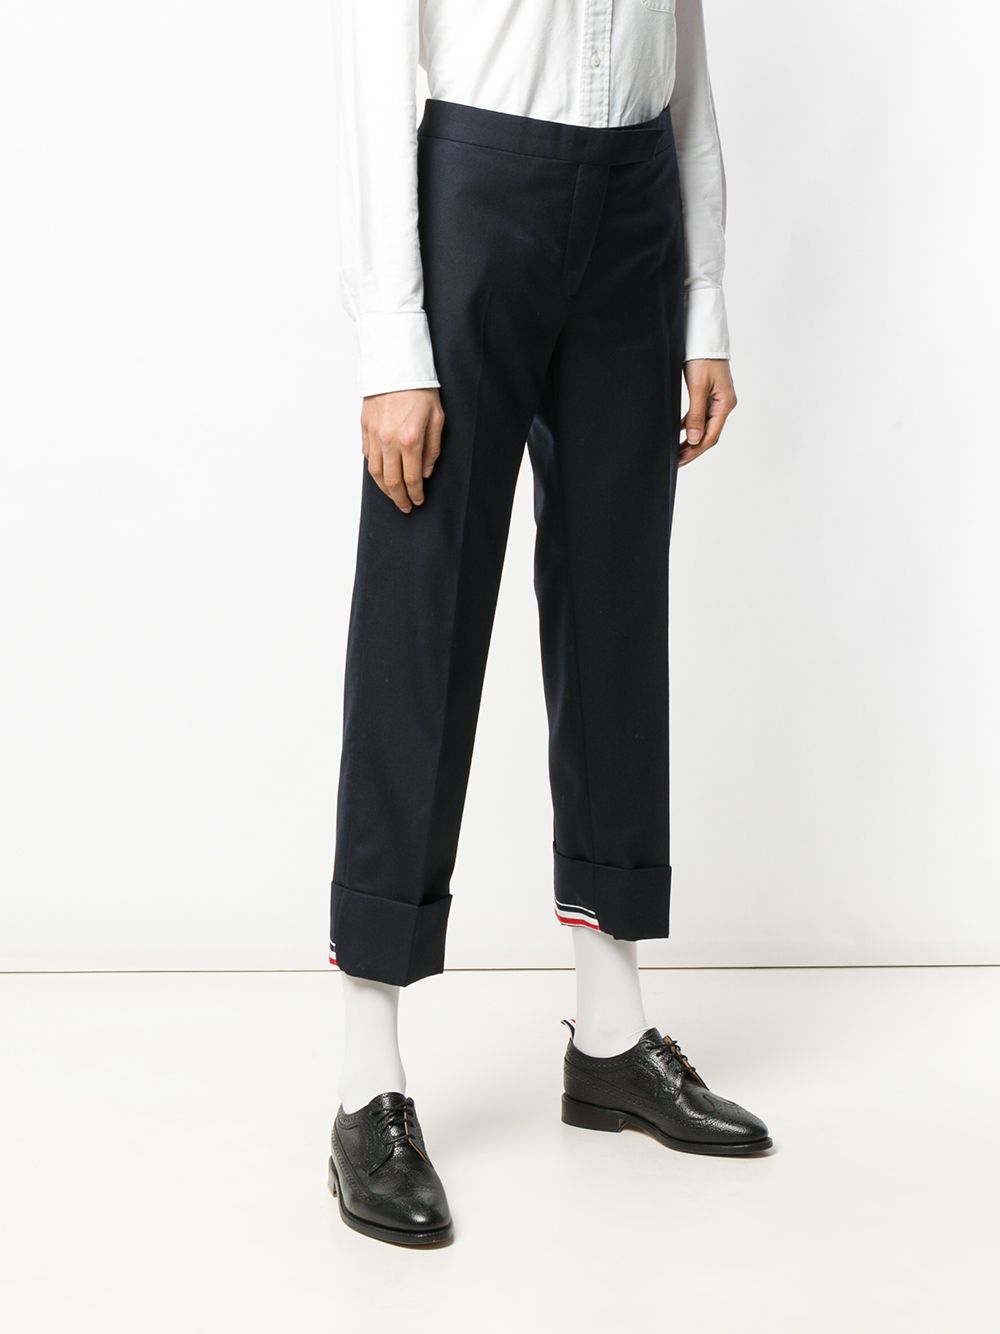 фото Thom browne укороченные брюки с полосатой отделкой на манжетах